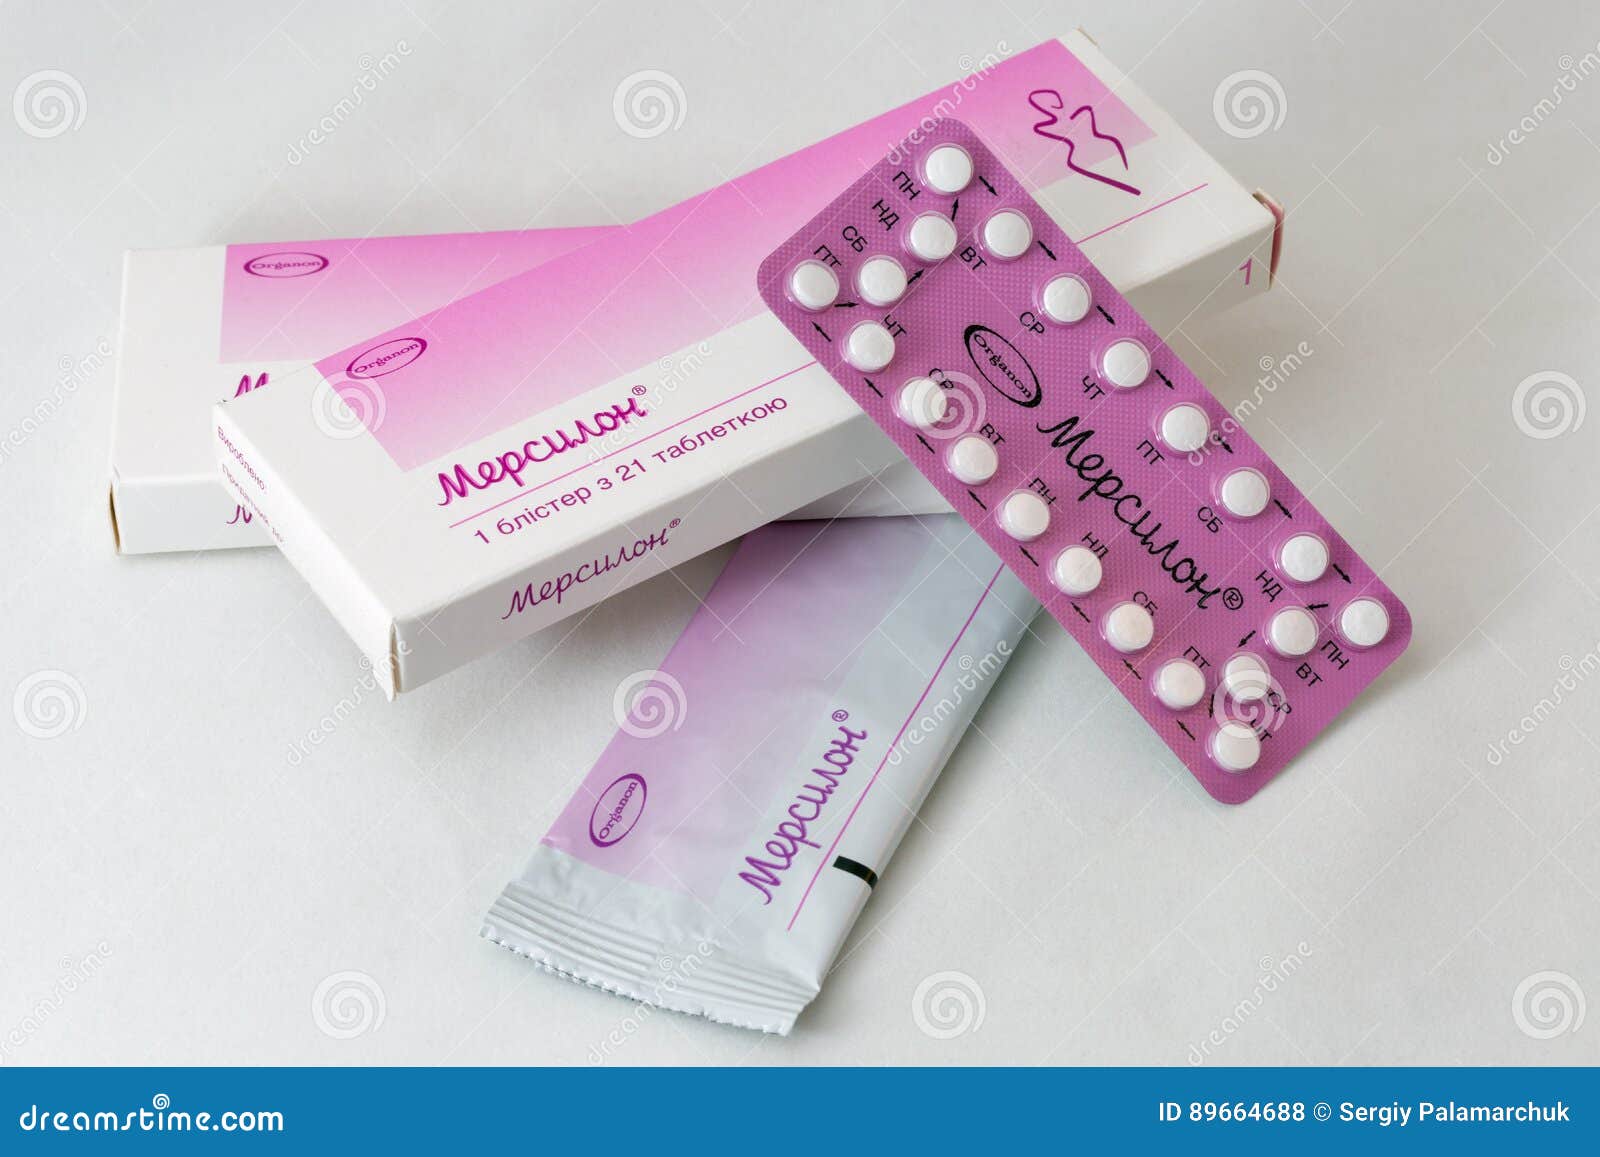 можно кончить принимаешь противозачаточные таблетки фото 31